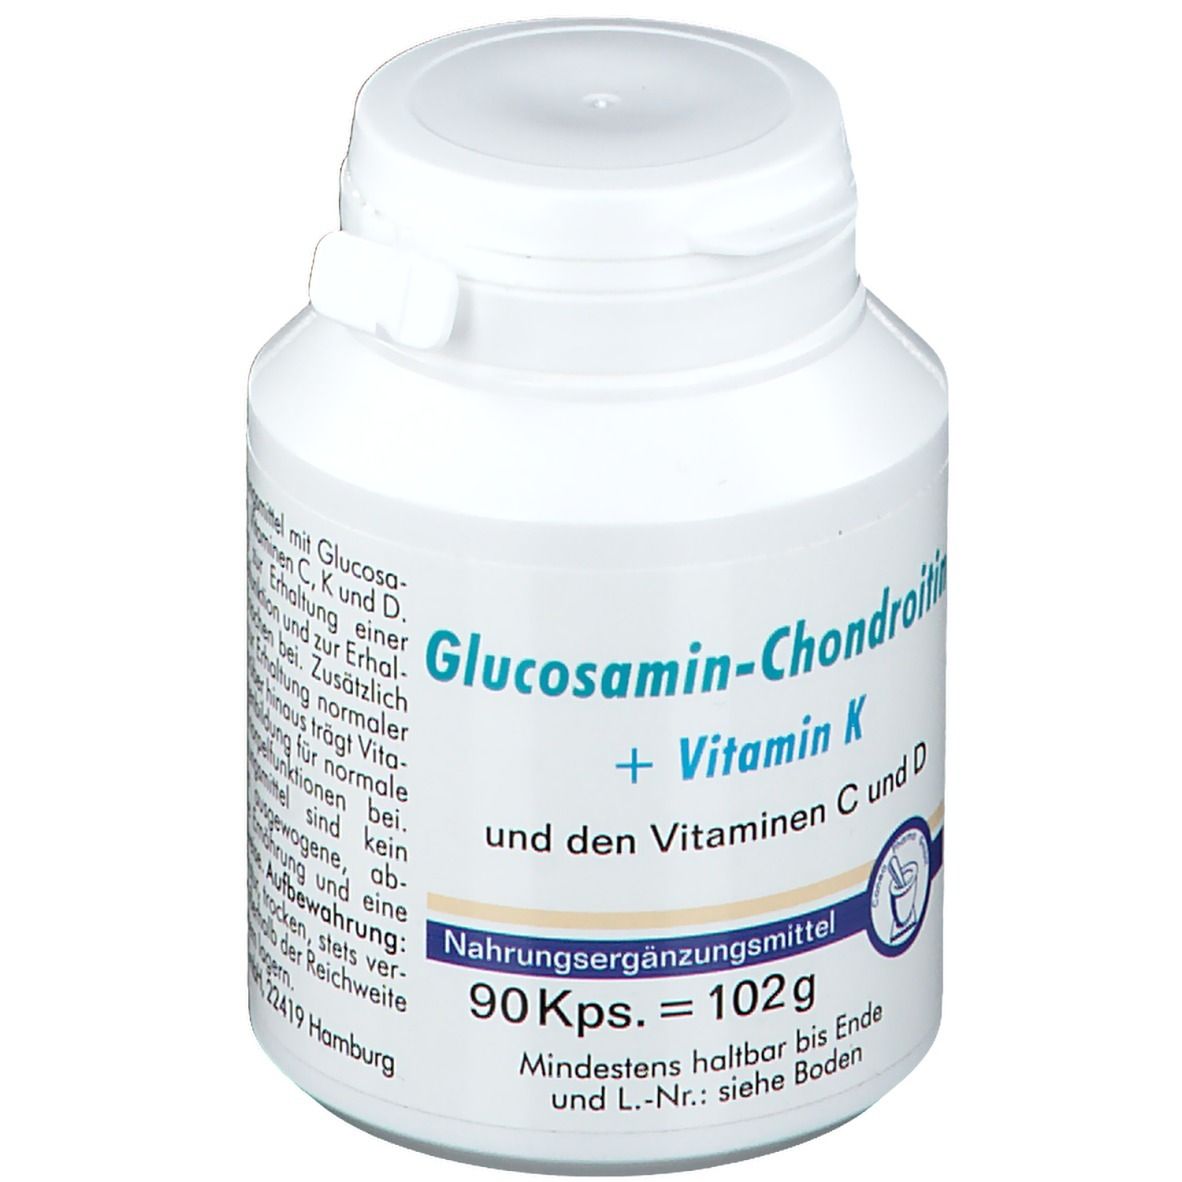 Glucosamin-Chondroitin + Vitamin K